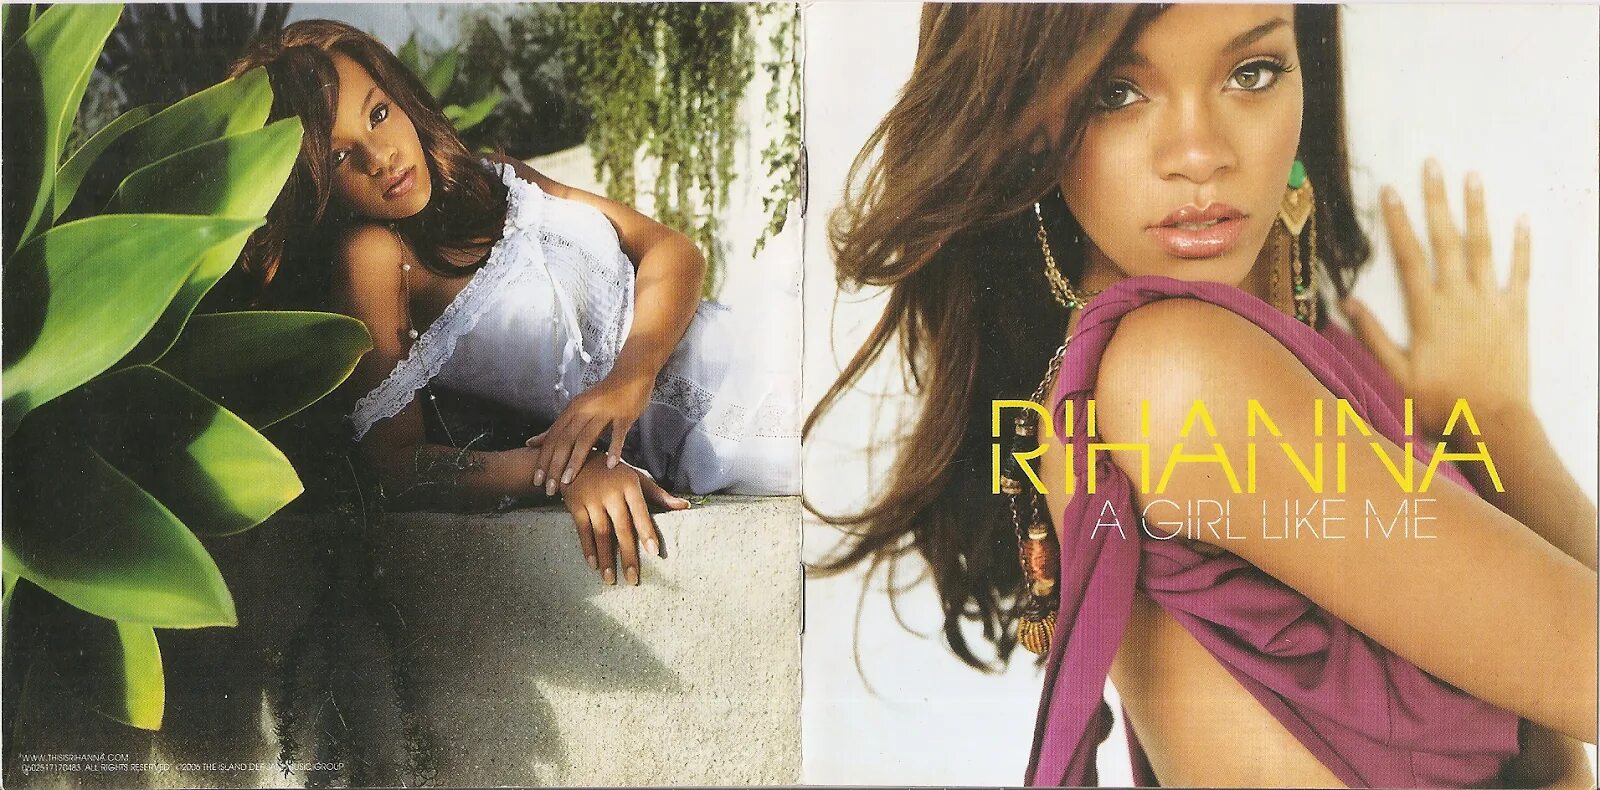 Rihanna - 2006 a girl like me. A girl like me Рианна Vinyl. A girl like me обложка. Rihanna a girl like me обложка для альбома.